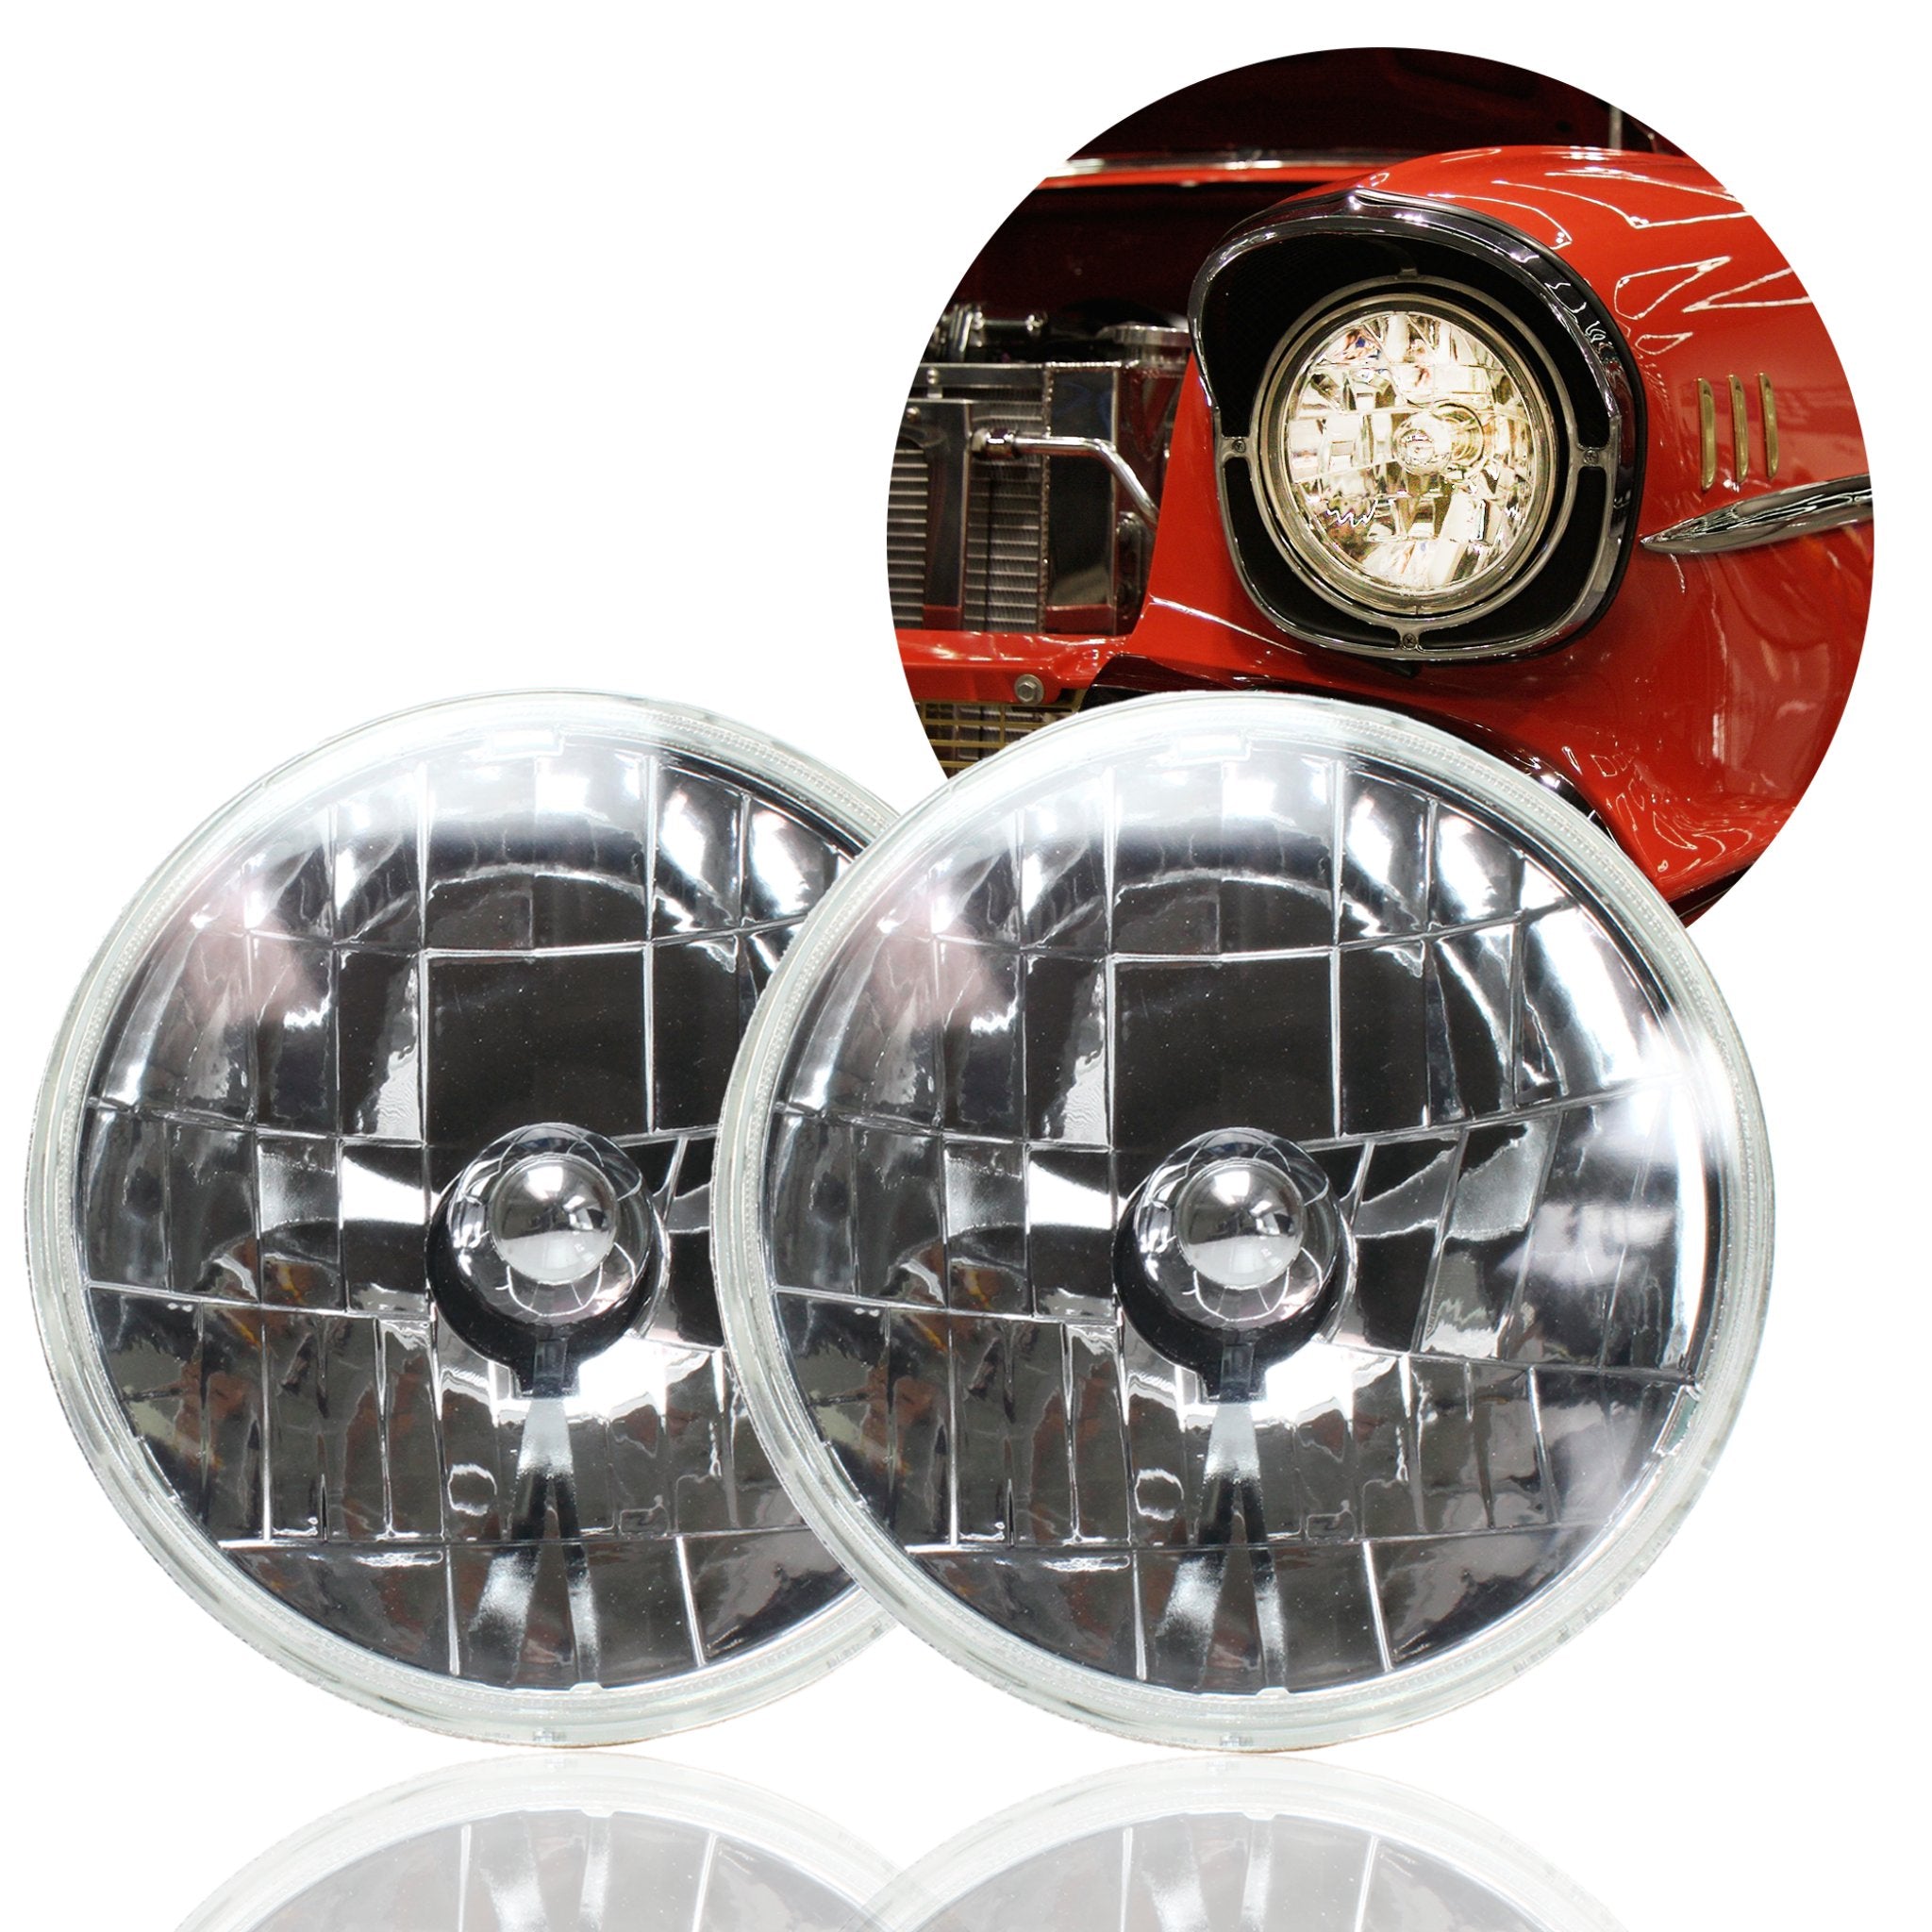 Snake Eye - Conjunto de faros delanteros halógenos redondos de 7 pulgadas, par de lentes de cristal para coche, camión, Hot Rod